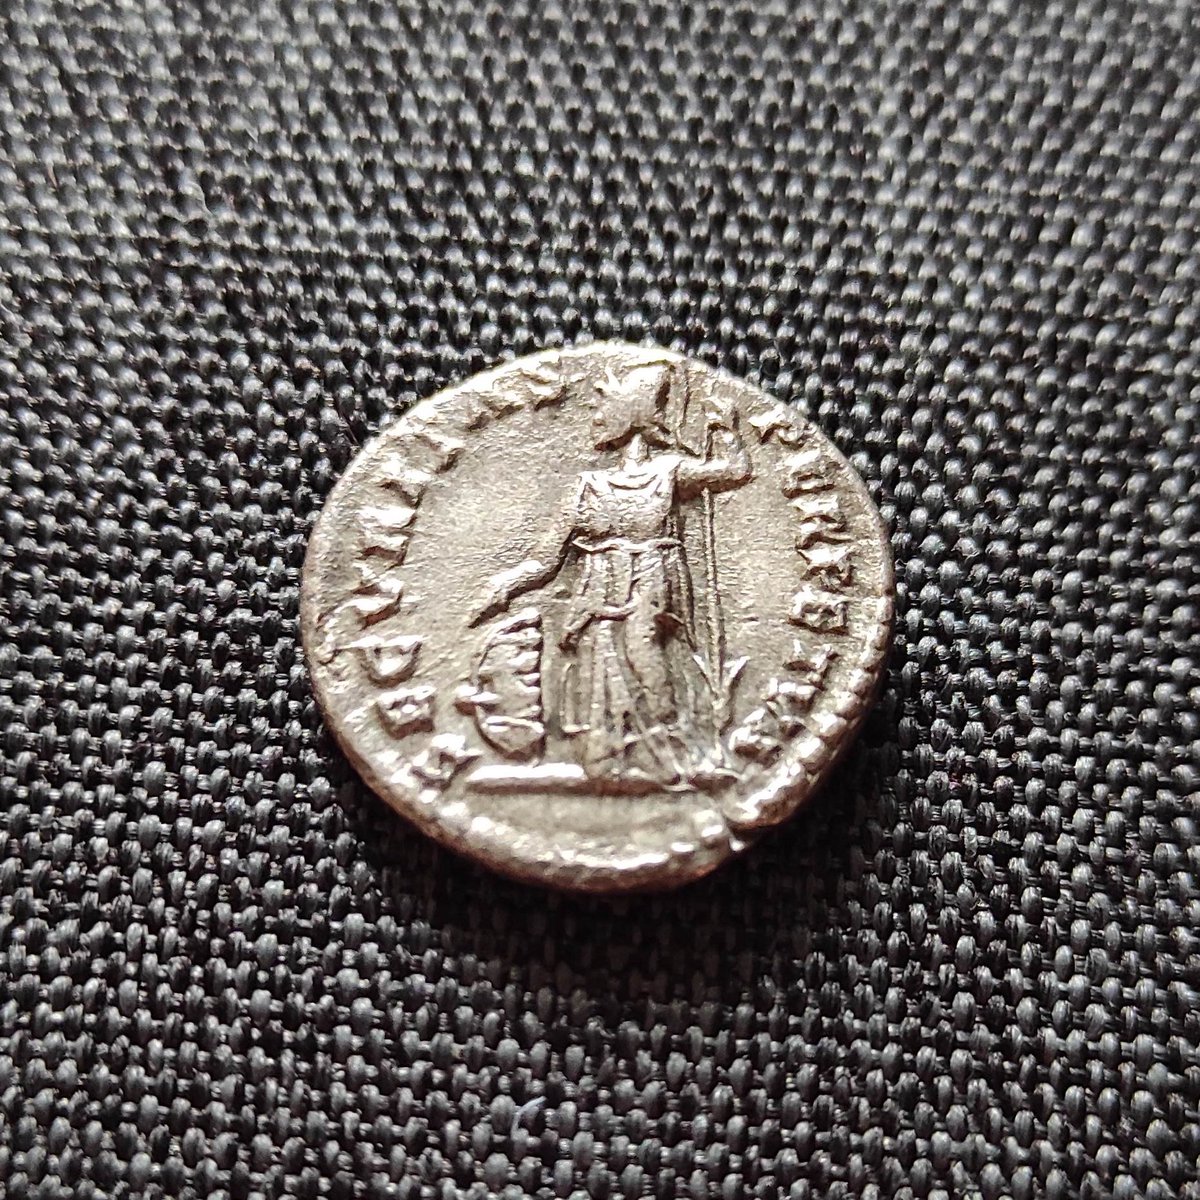 Denarius, prata, 196dc
Marcus Aurelius Antoninus Caracalla
pt.m.wikipedia.org/wiki/Caracala